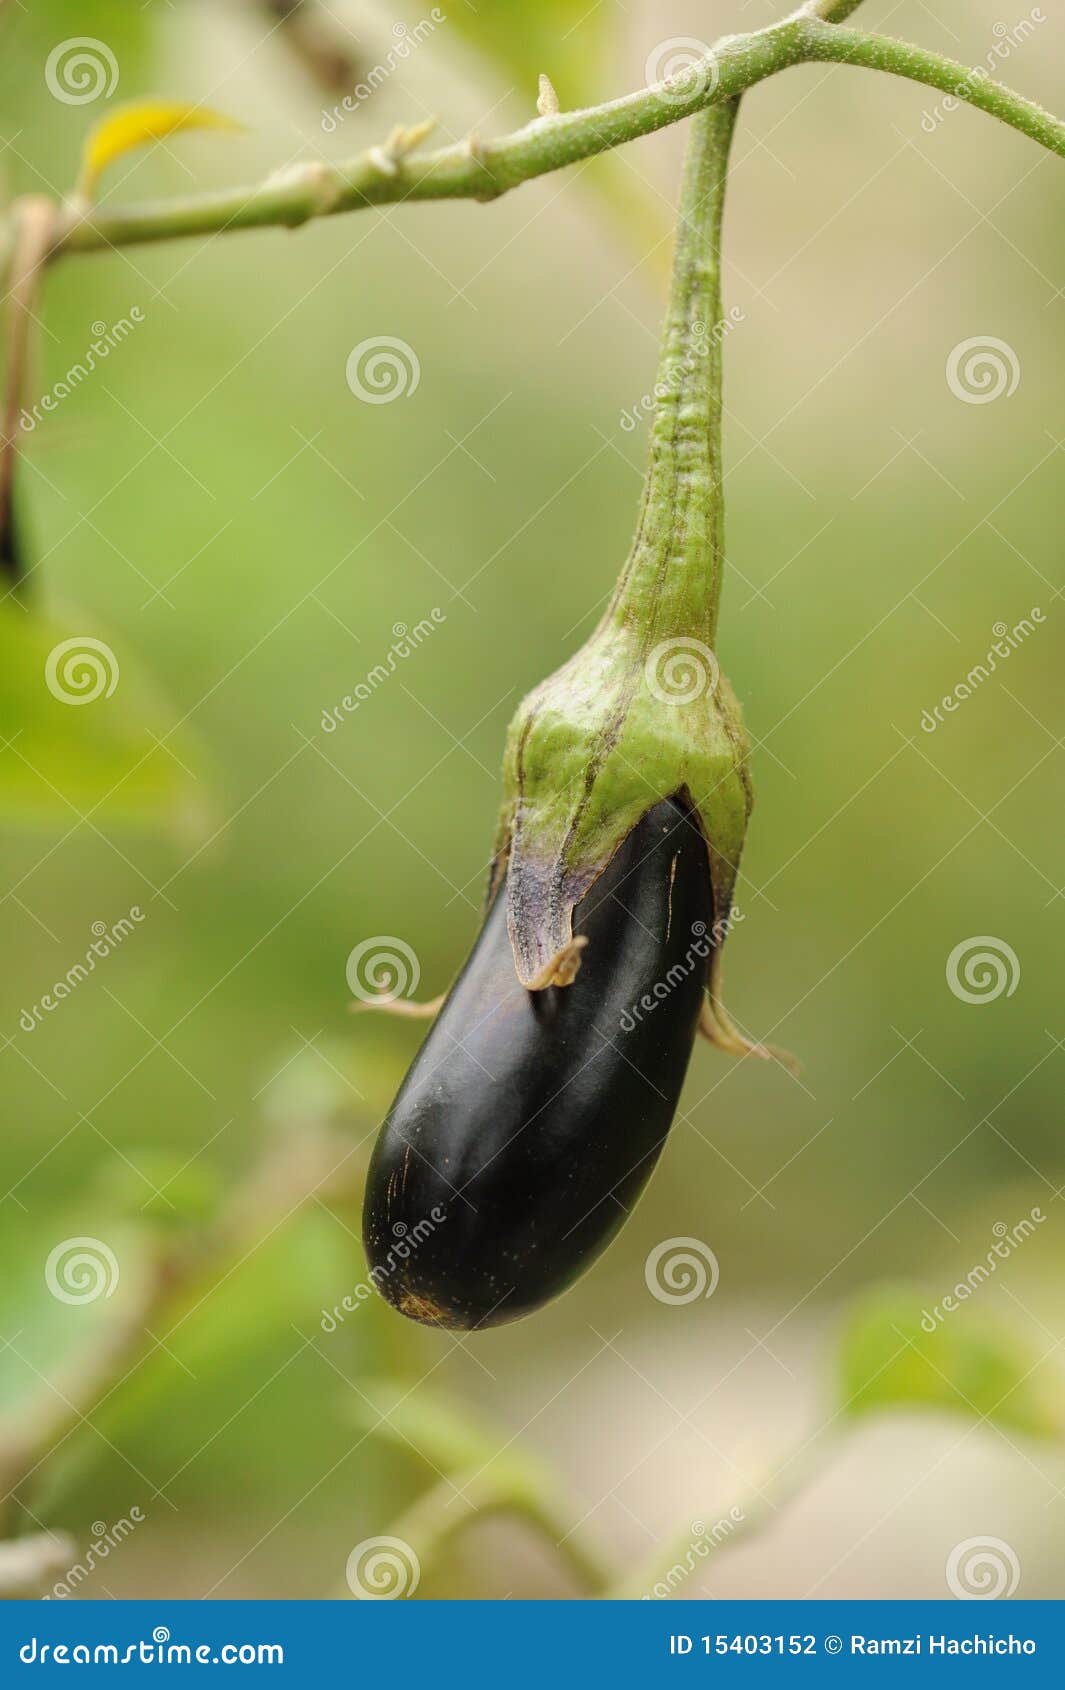 fresh aubergine on vegetable garden